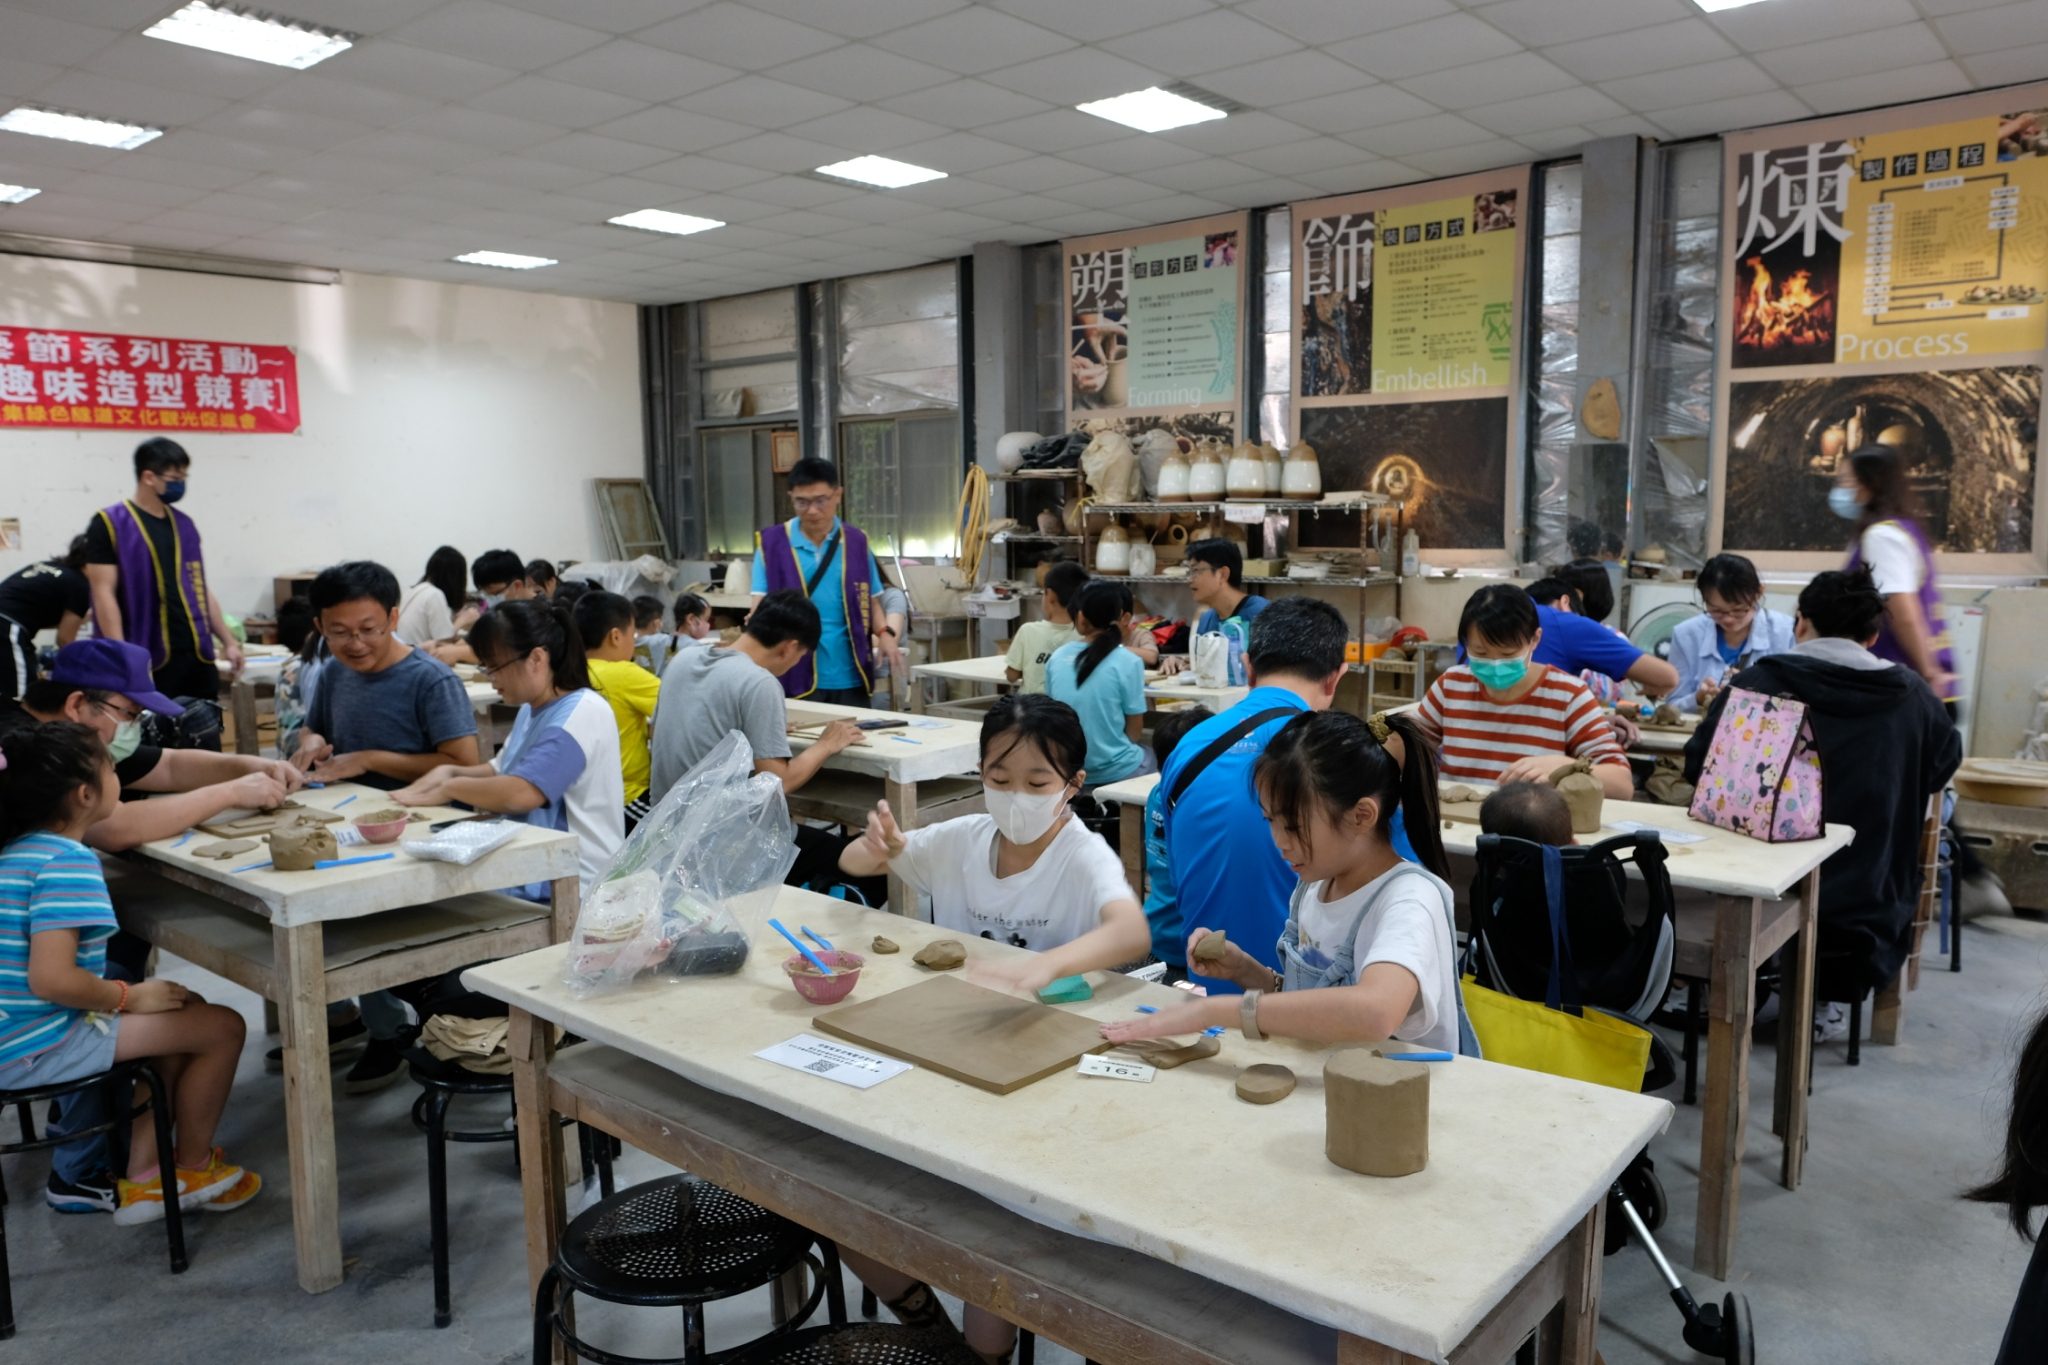 第25屆集集陶藝節 結合文化與觀光 推集集鐵道深度旅遊 - 早安台灣新聞 | Morning Taiwan News